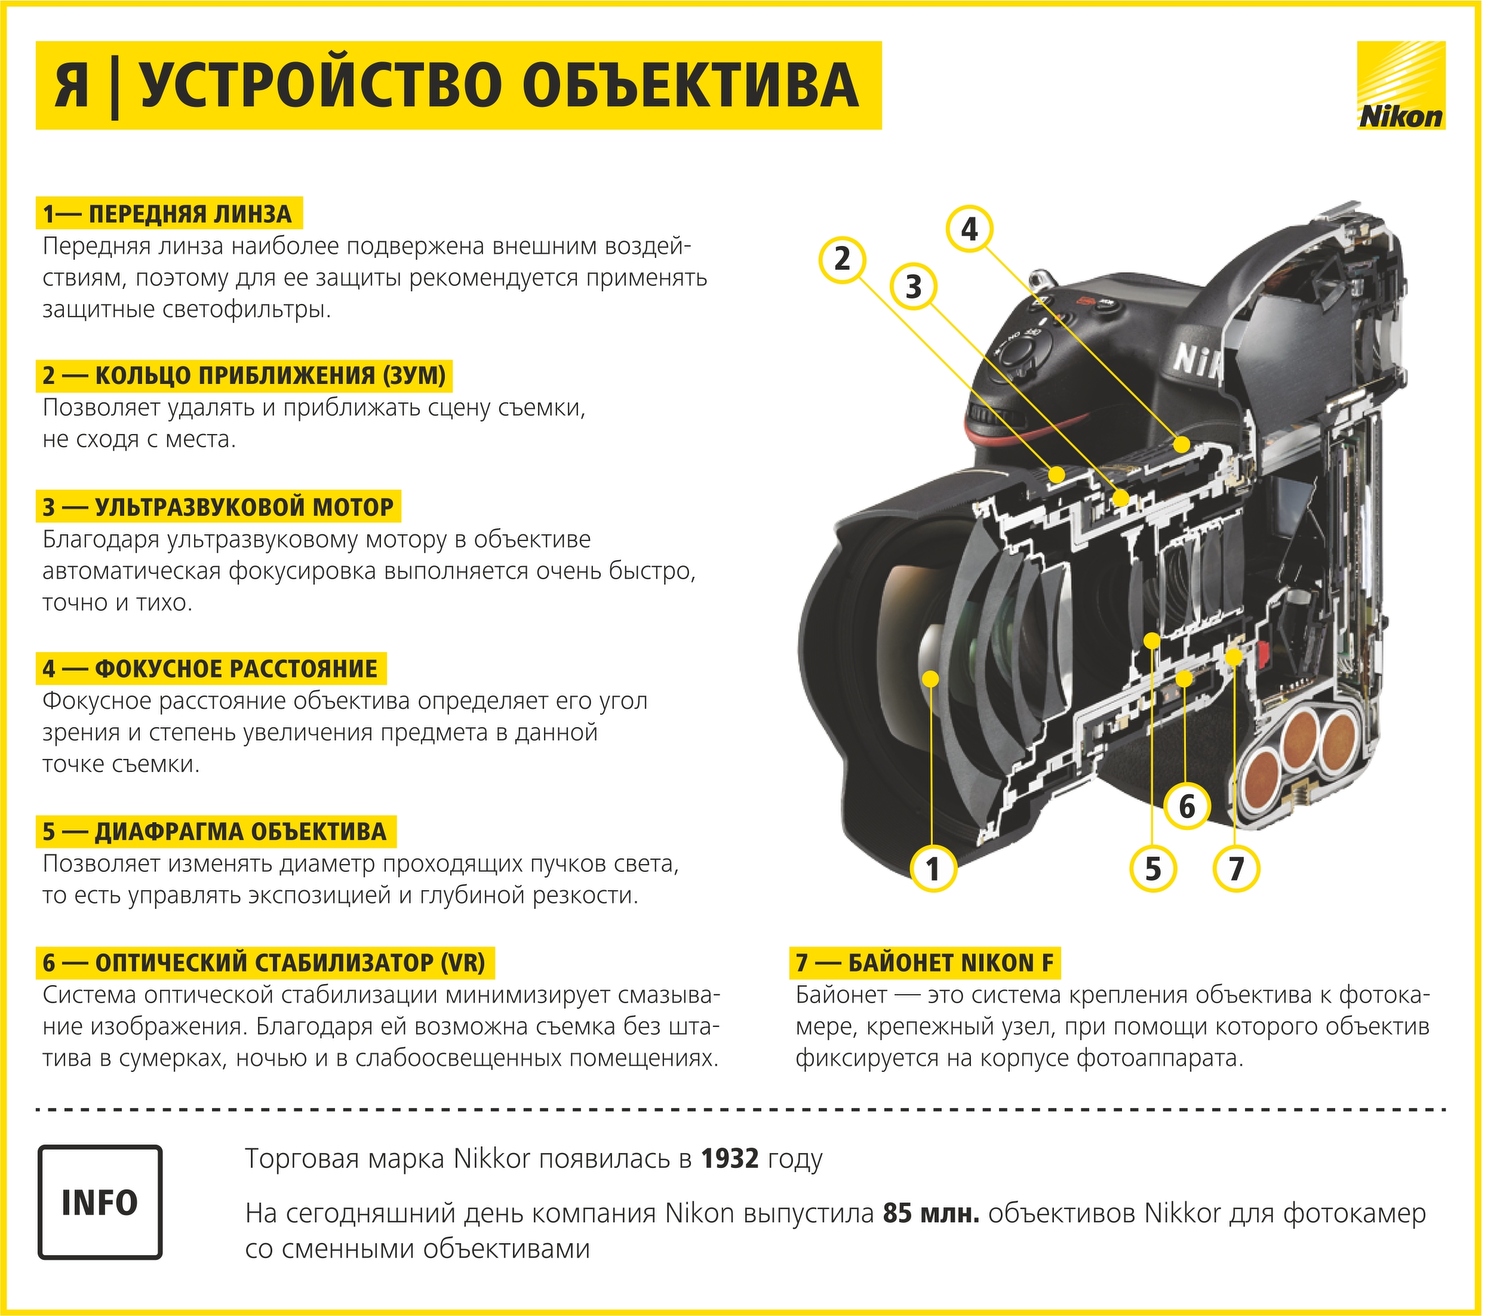 Как научиться фотографировать: пошаговая инструкция от Nikon Info_nikon_13